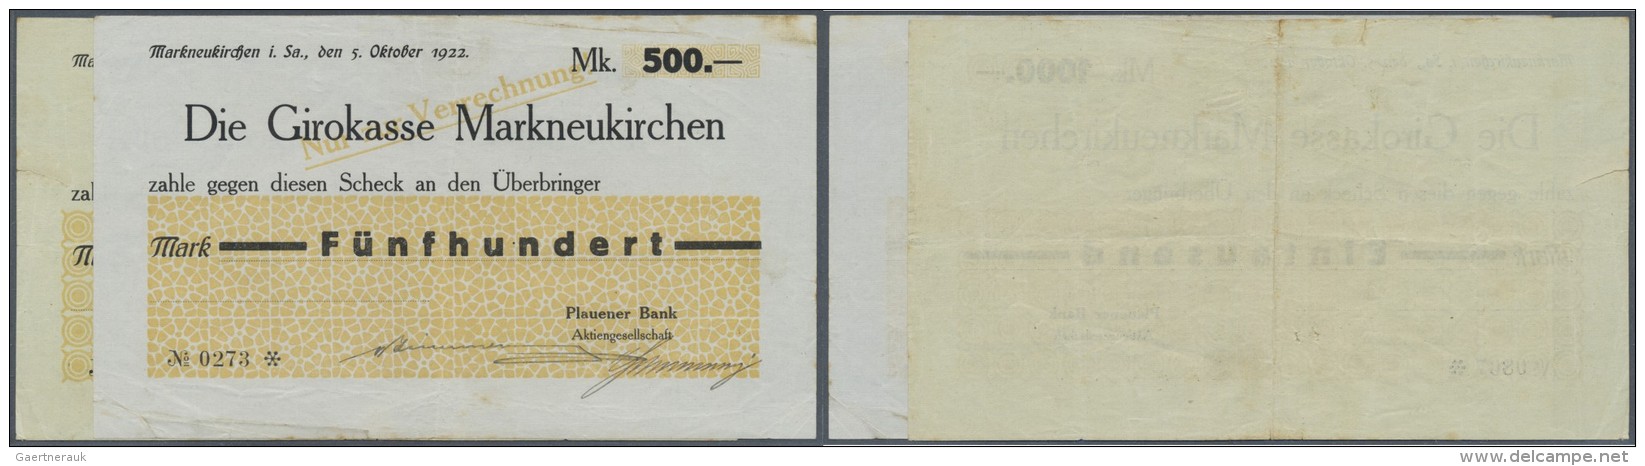 Deutschland - Notgeld - Sachsen: Markneukirchen, Plauener Bank, 500, 1000 Mark, 5.10.1923, Schecks Auf Girokasse, Erh. I - Lokale Ausgaben